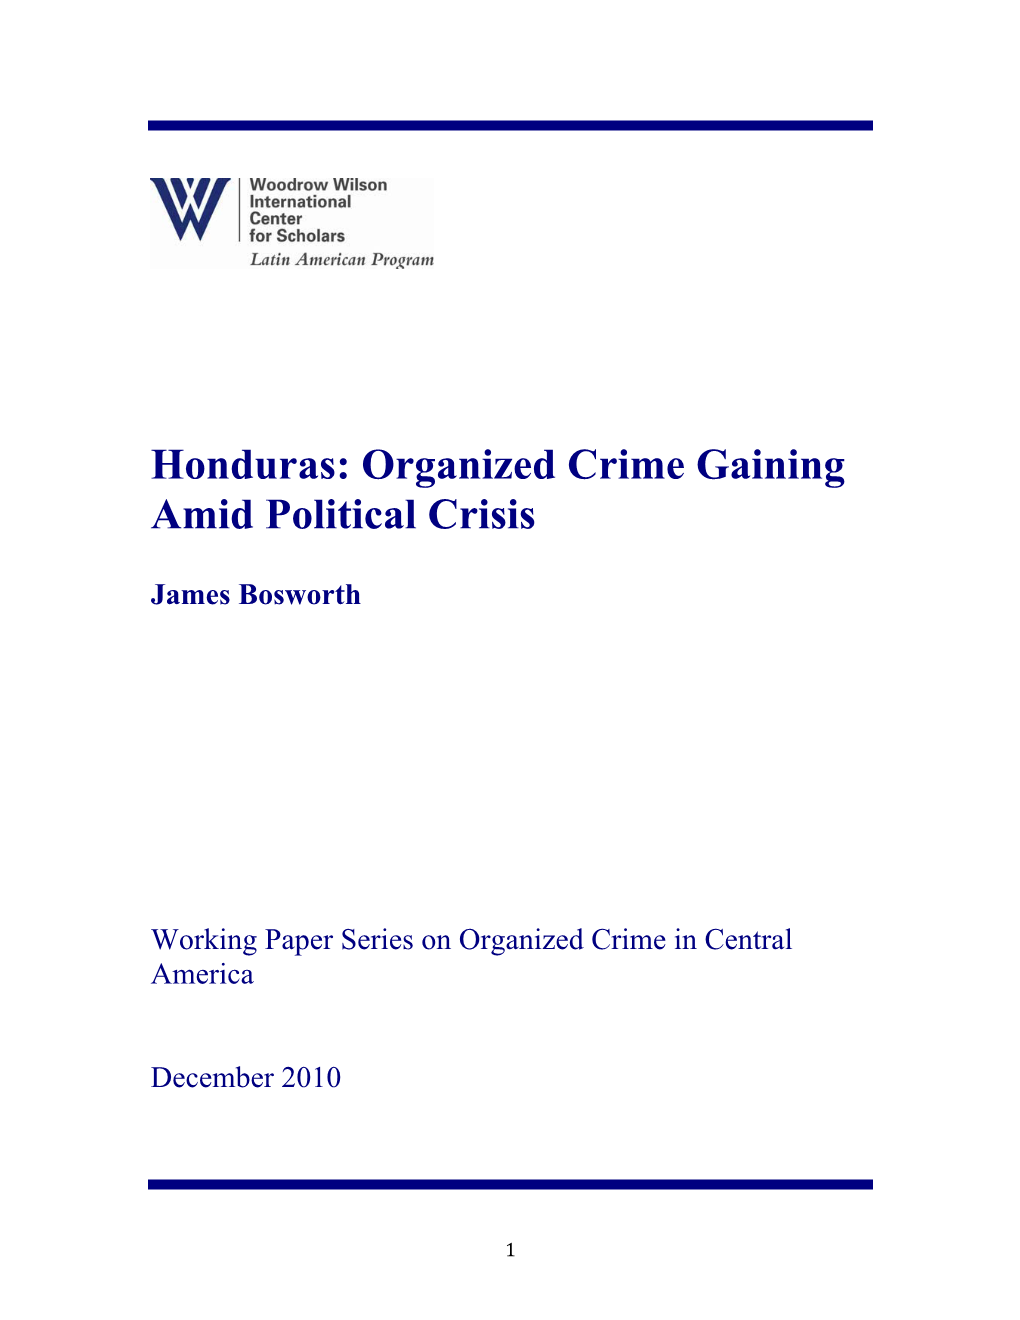 Honduras: Organized Crime Gaining Amid Political Crisis